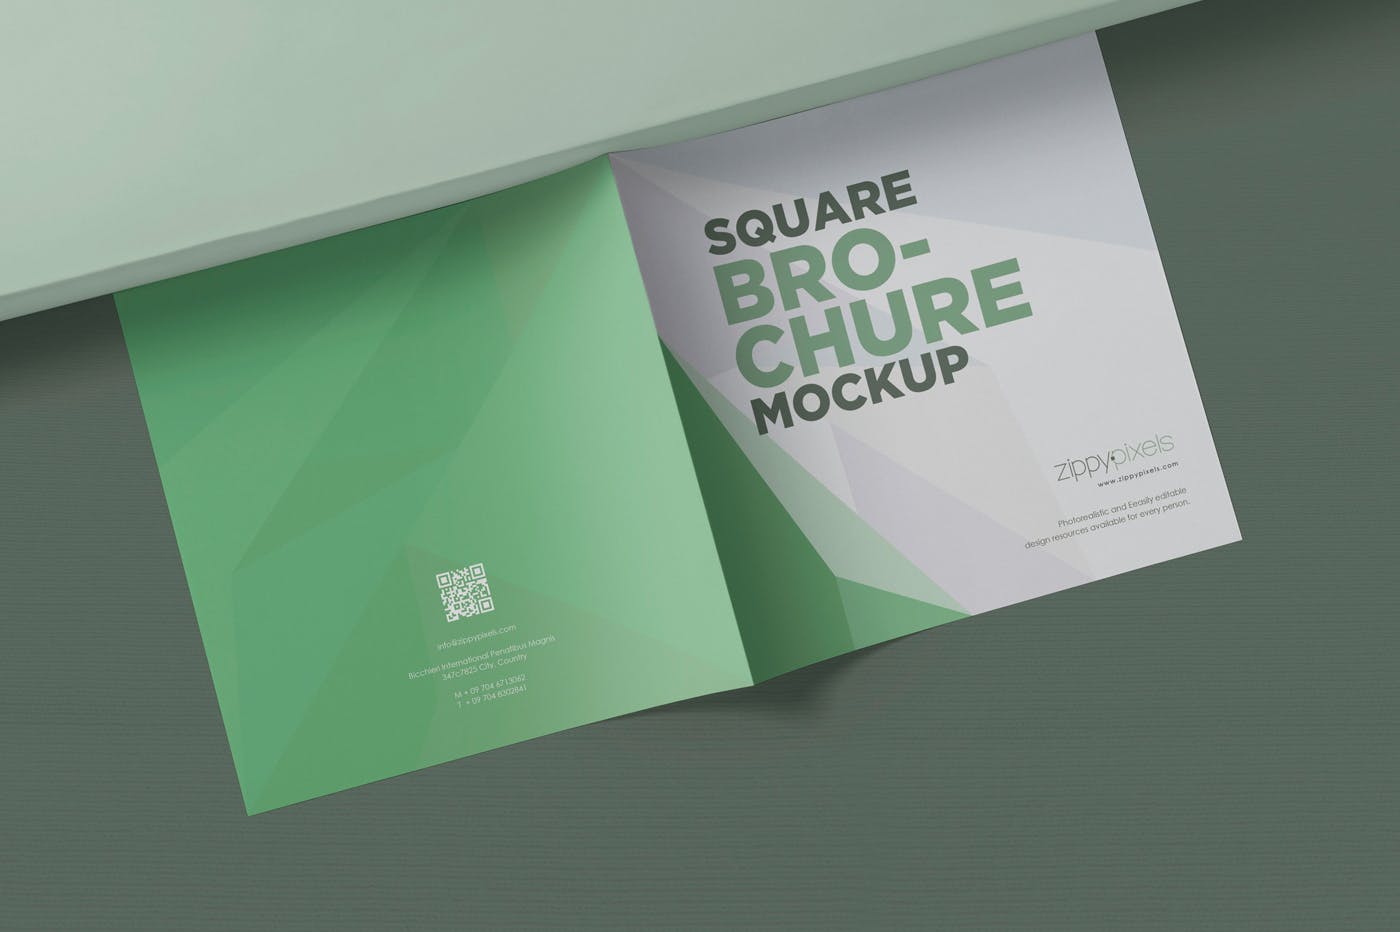 方形对折页宣传手册设计效果图样机第一素材精选 Square Bifold Brochure Mockups插图(1)